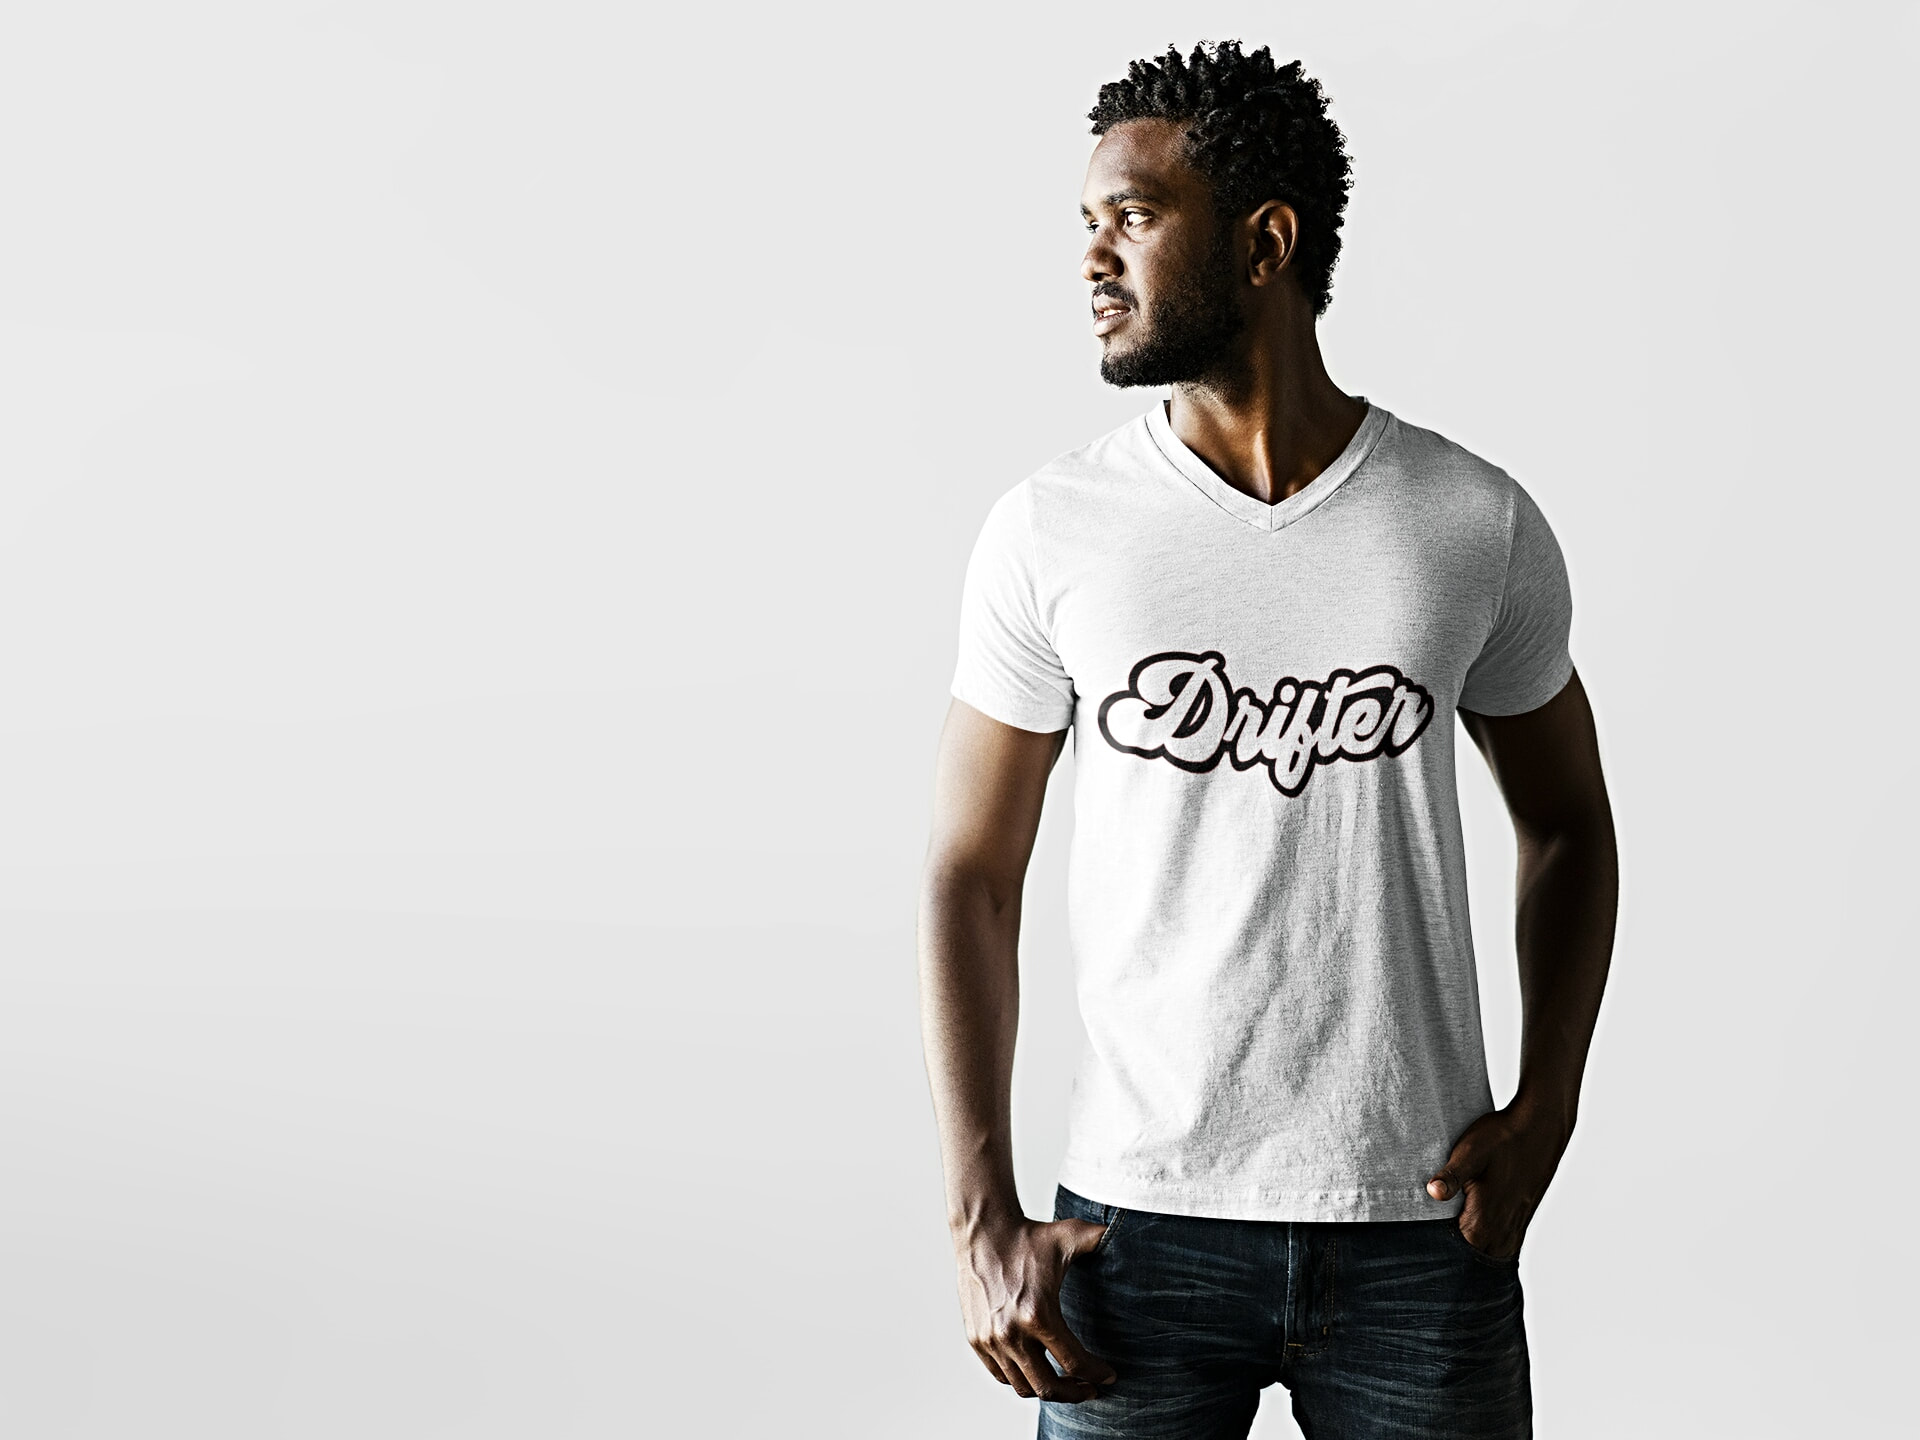 Drifter Trendy Men's Graphic T-Shirt - Tee Shirt - Top